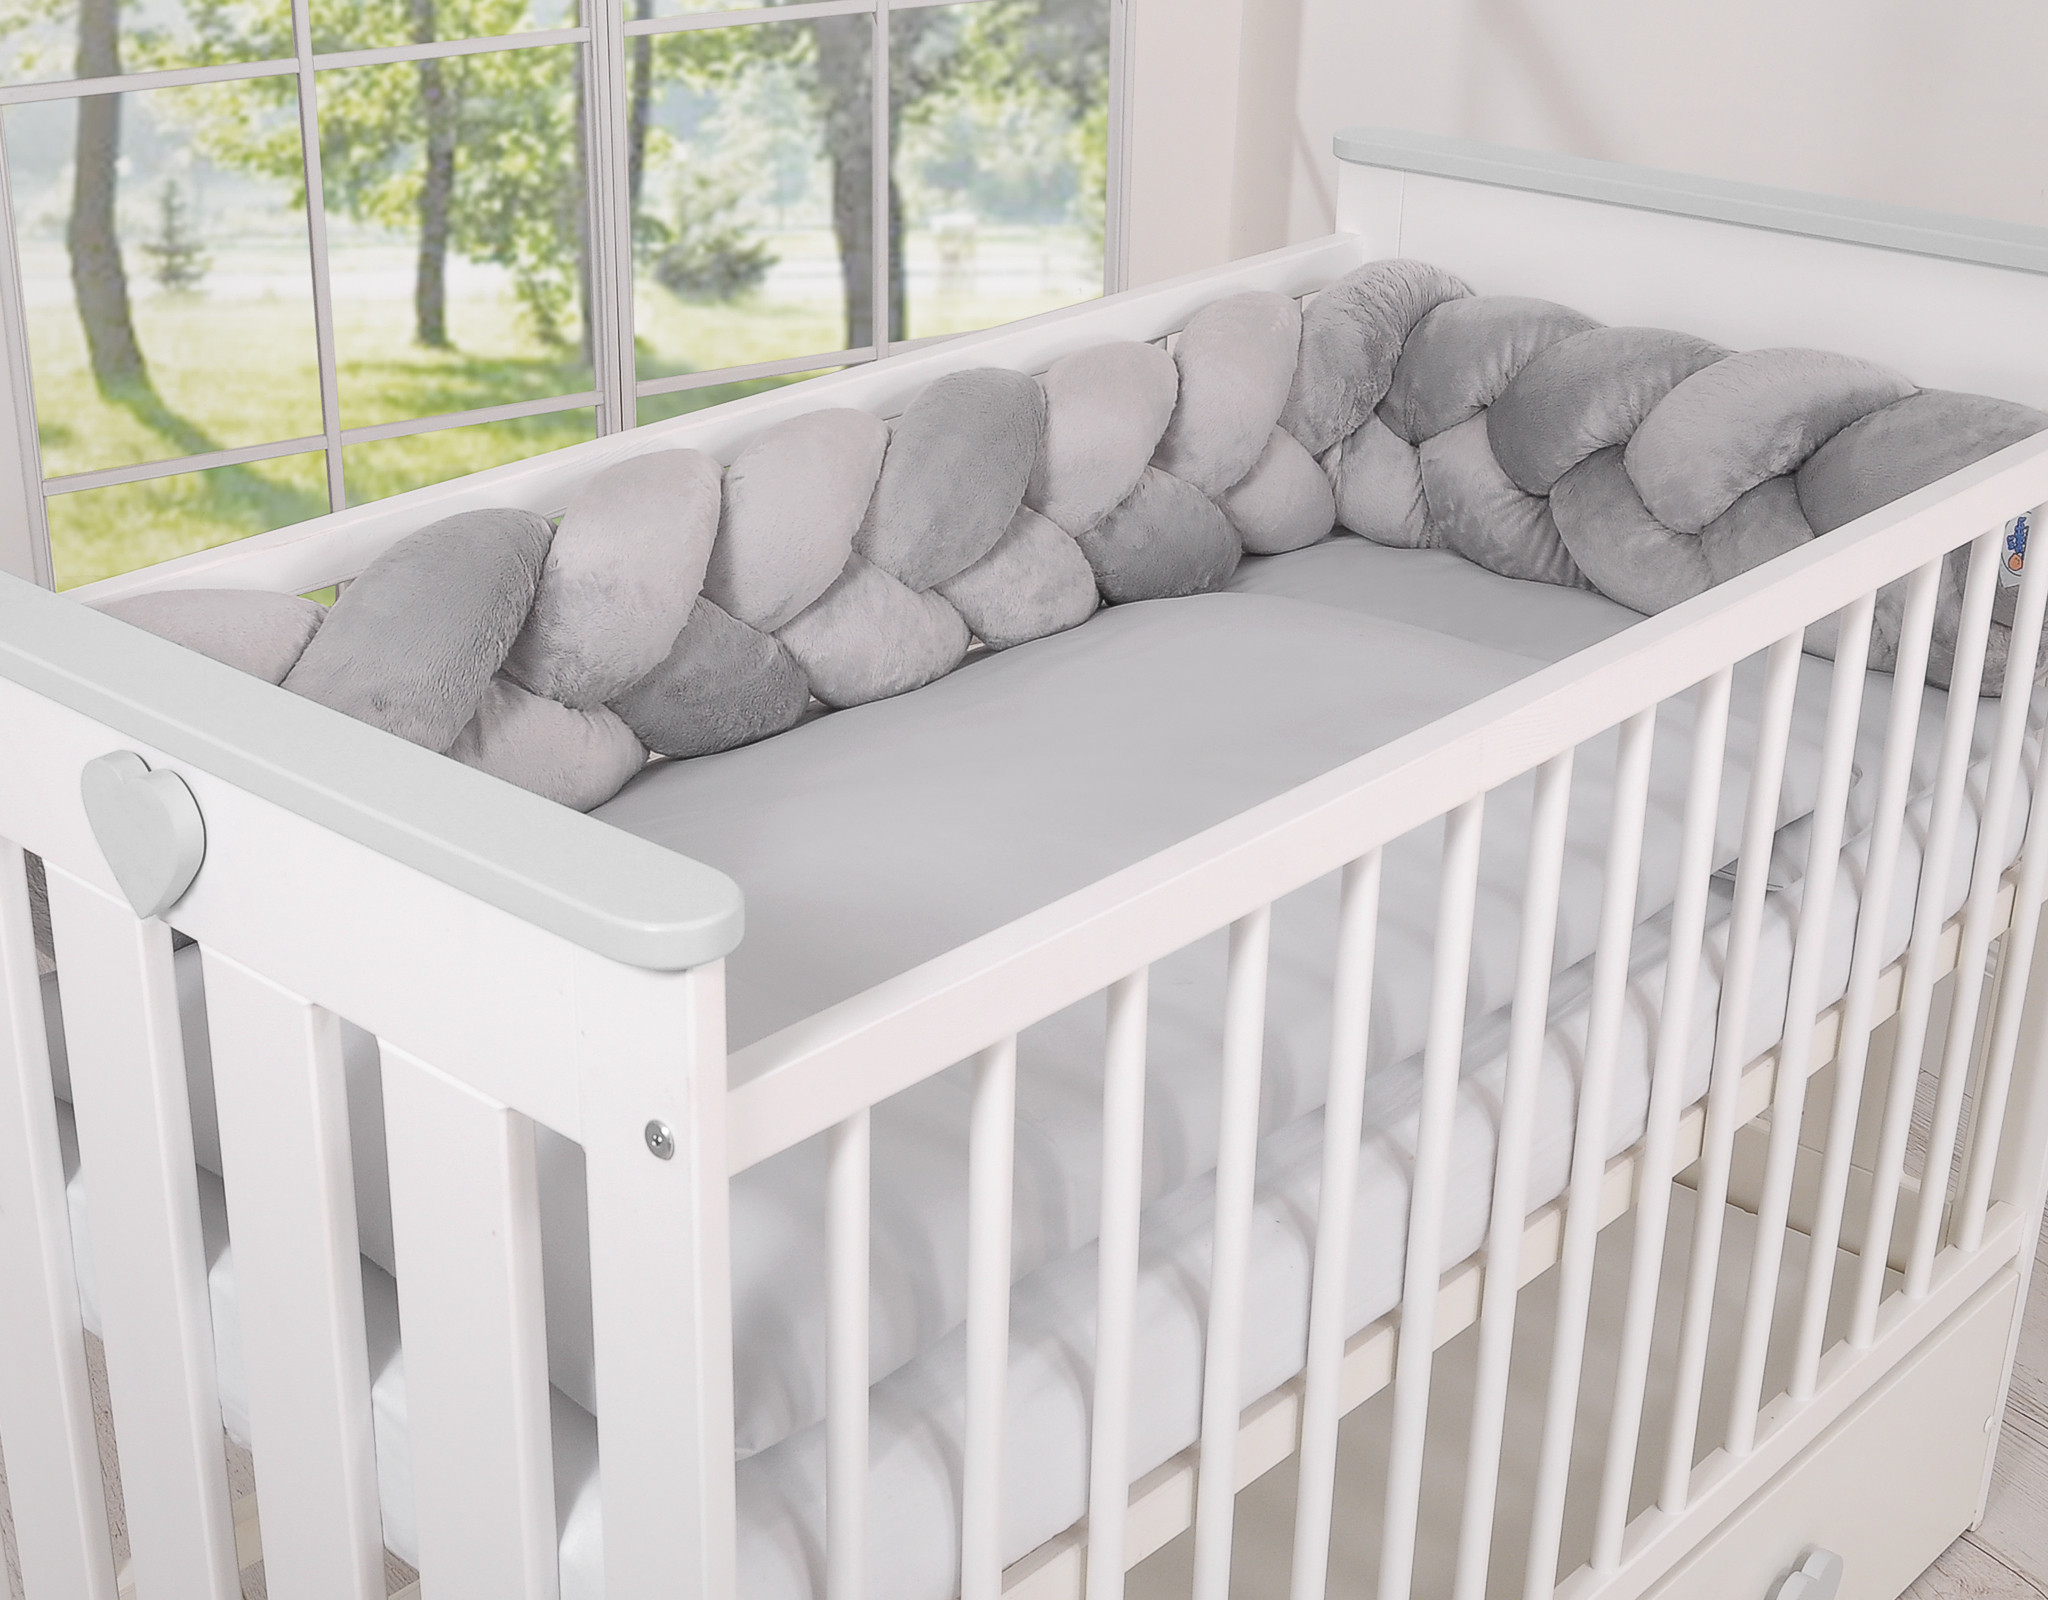 Comment choisir le tour de lit pour son bébé ?